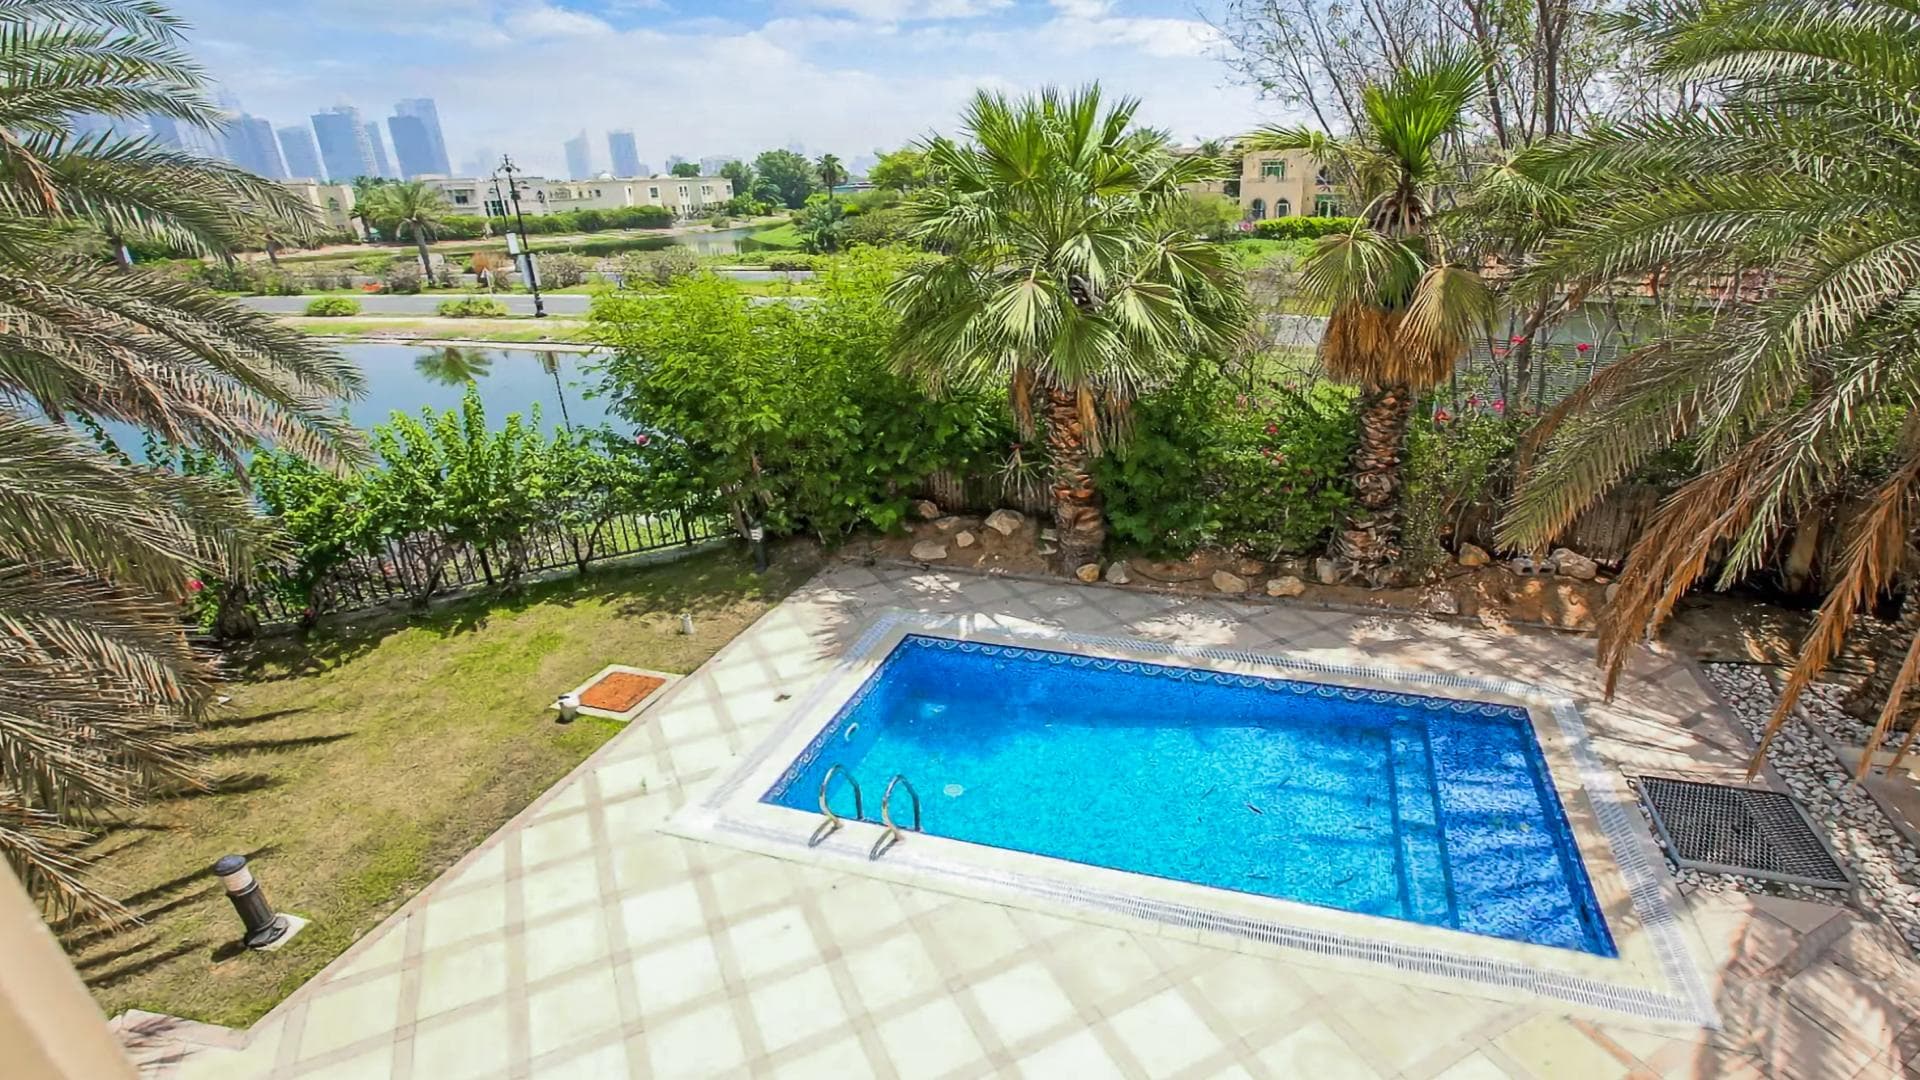 4 Bedroom Villa For Rent Al Thamam 13 Lp36706 292bd52d61e48200.jpg